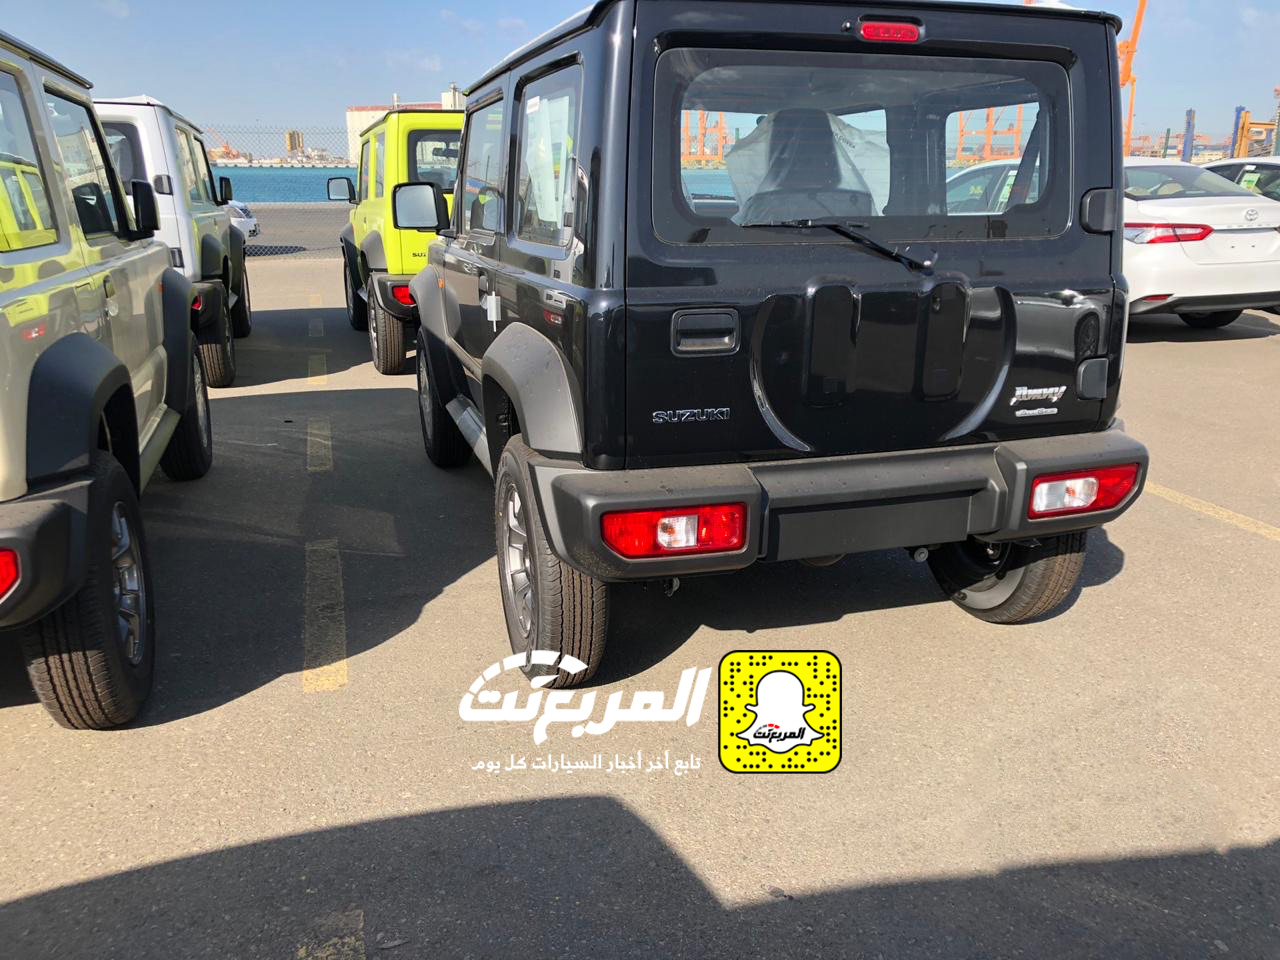 "بالصور" وصول سوزوكي جيمني 2019 الشكل الجديد الى السعودية + المواصفات Suzuki Jimny 17